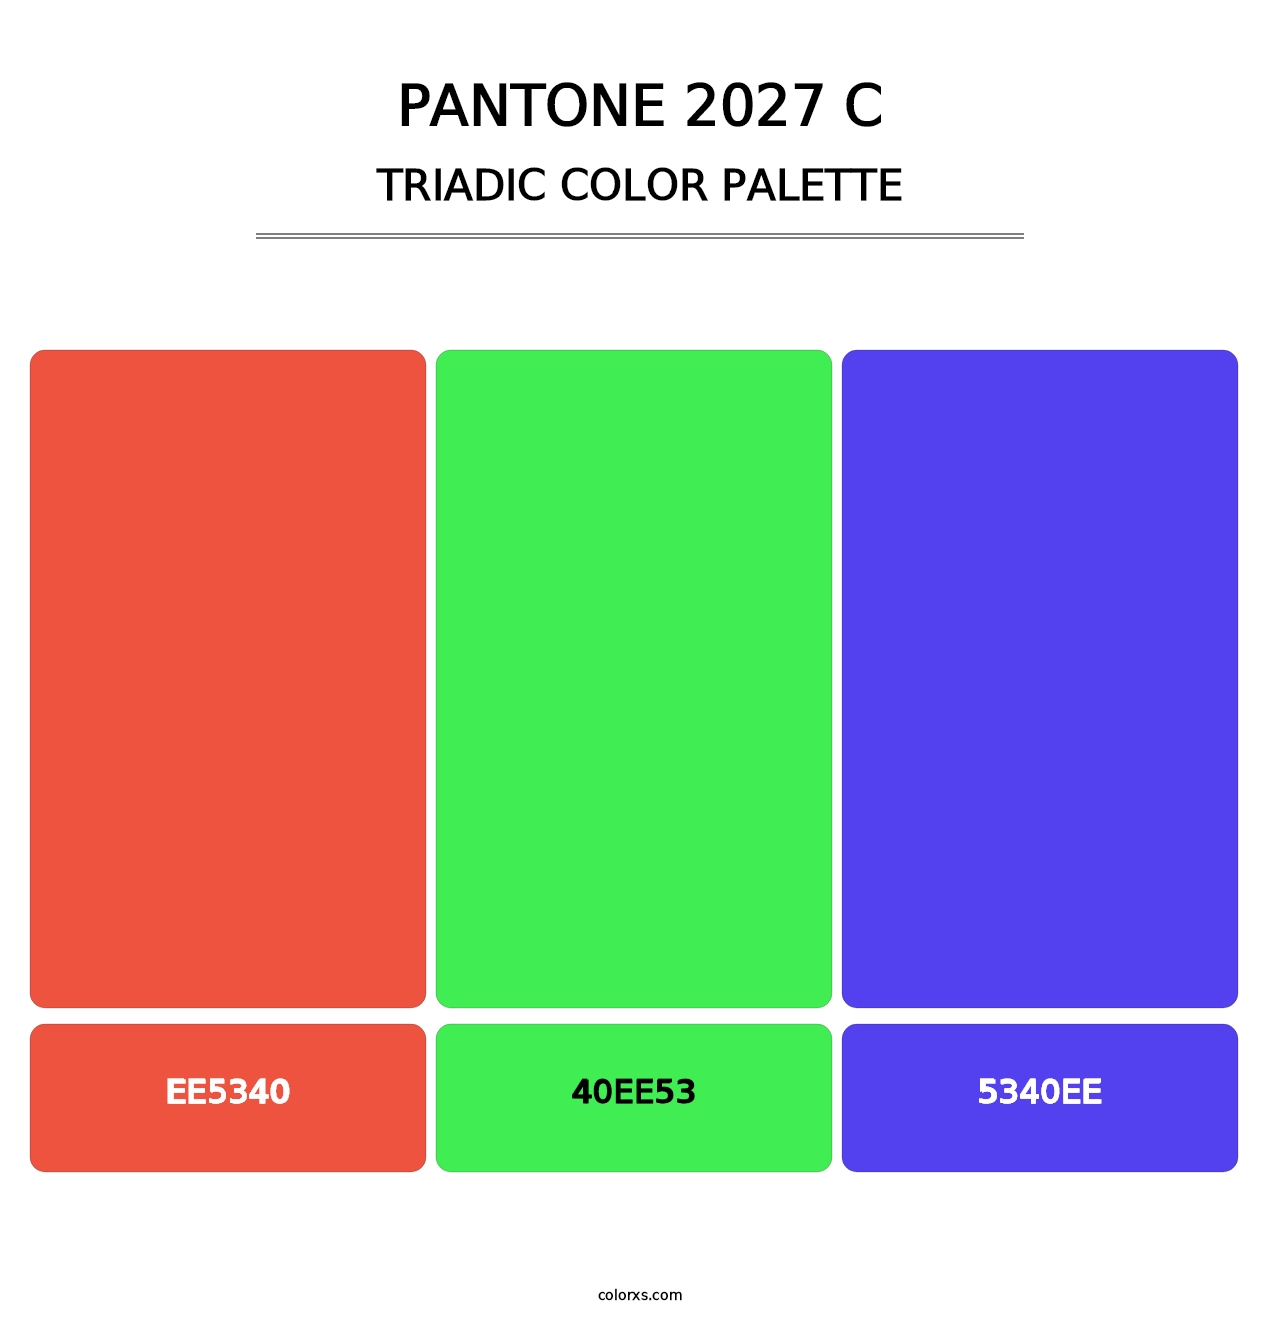 PANTONE 2027 C - Triadic Color Palette